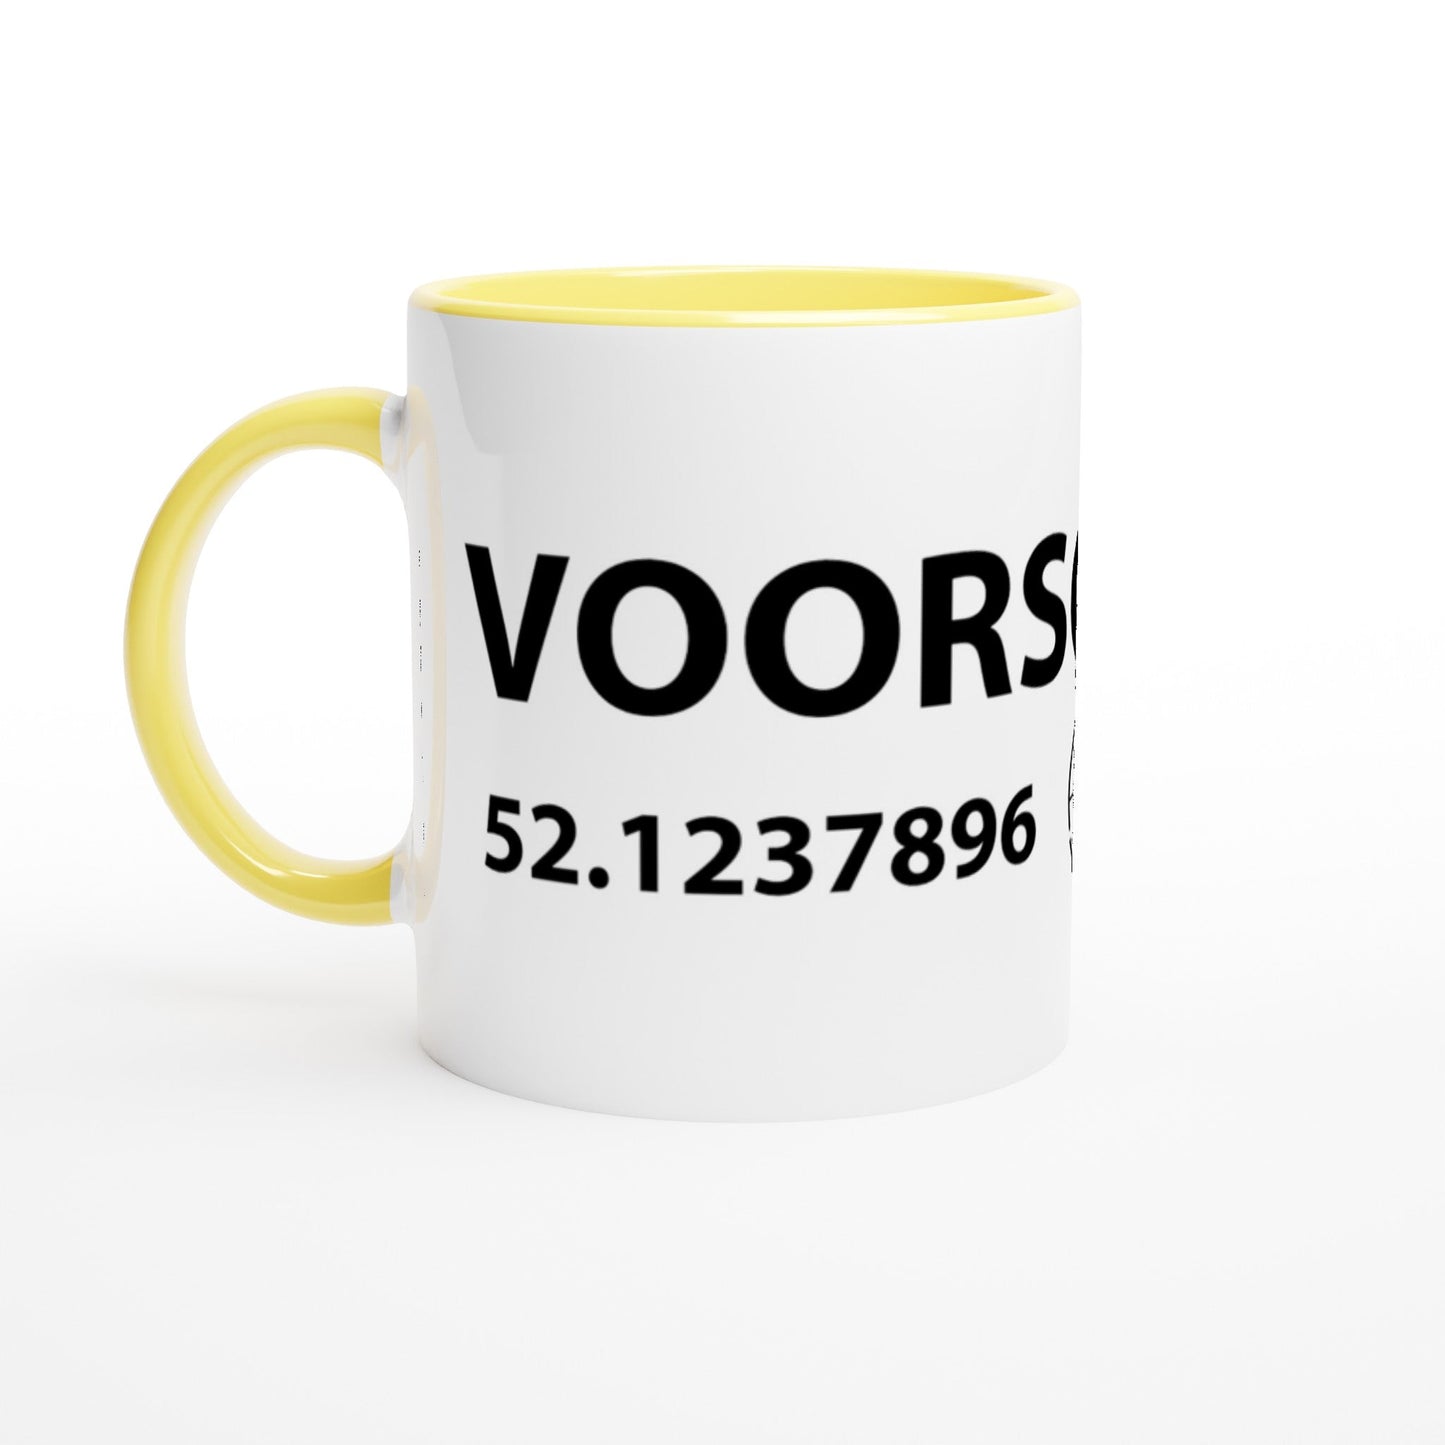 MOK met coördinaten Voorschoten - Webshop I Love Voorschoten